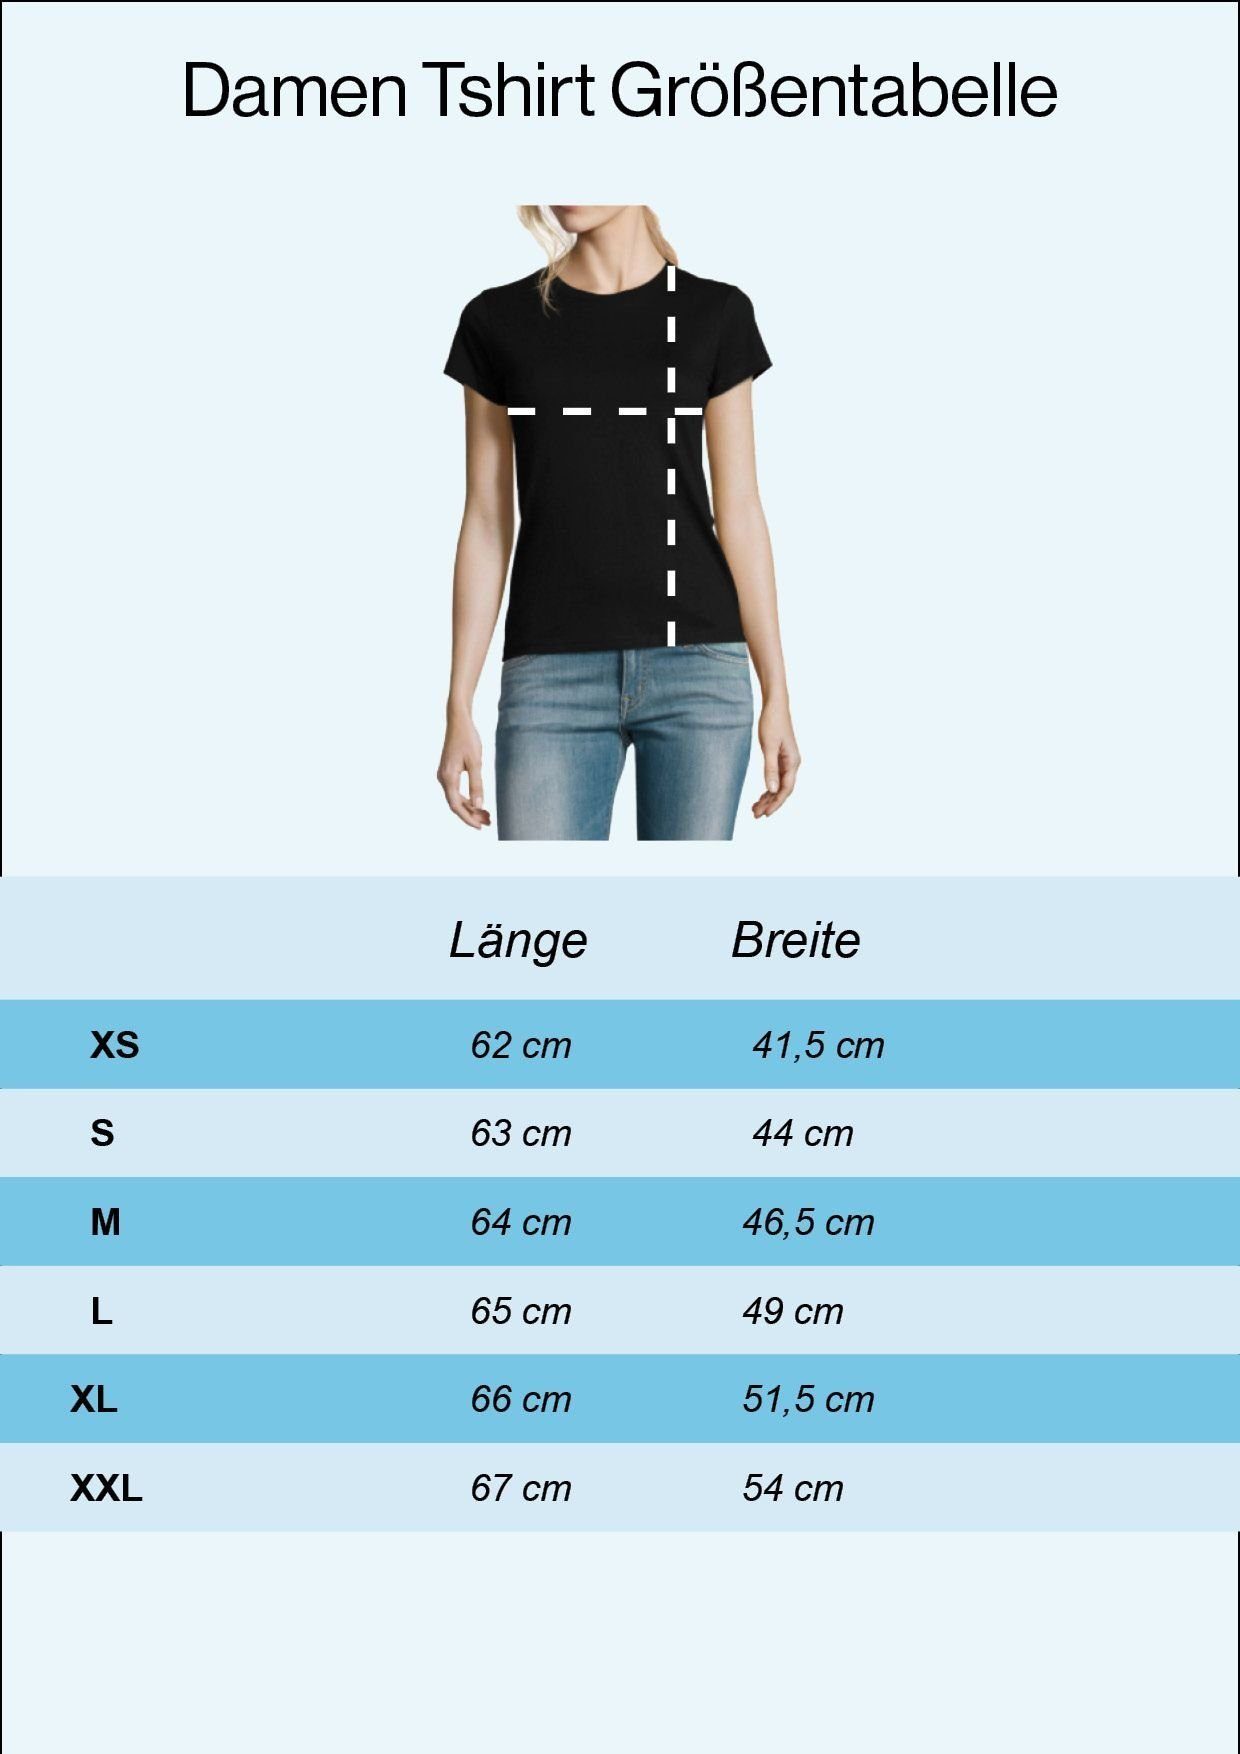 Youth Designz Damen Shirt Heartbeat mit trendigem Fahrrad Schwarz Frontprint T-Shirt